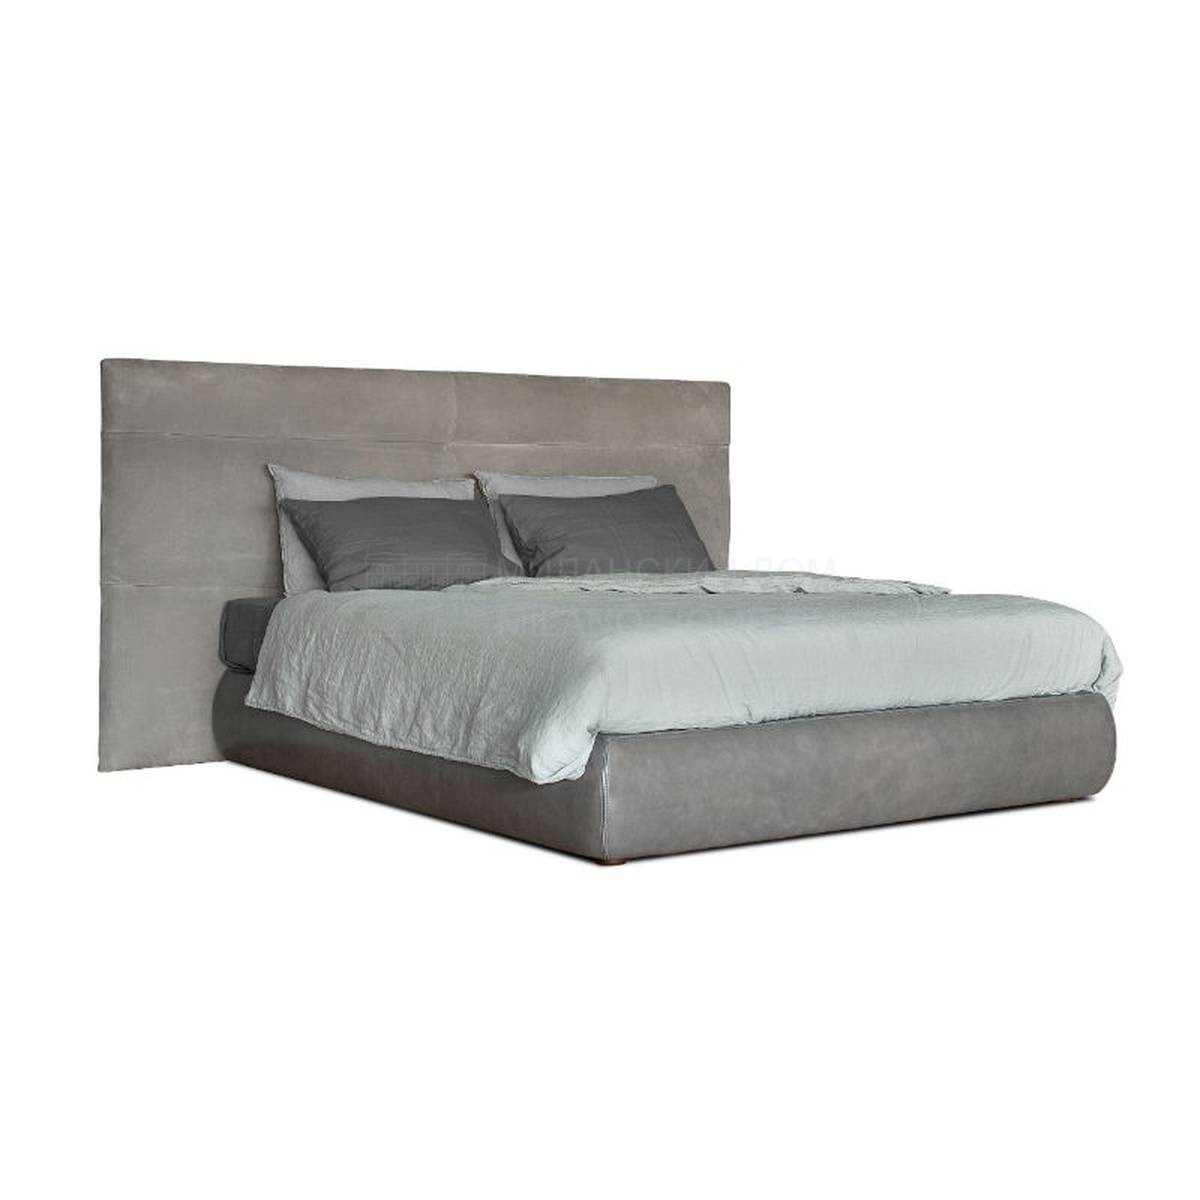 Кровать с мягким изголовьем Couche bed из Италии фабрики BAXTER